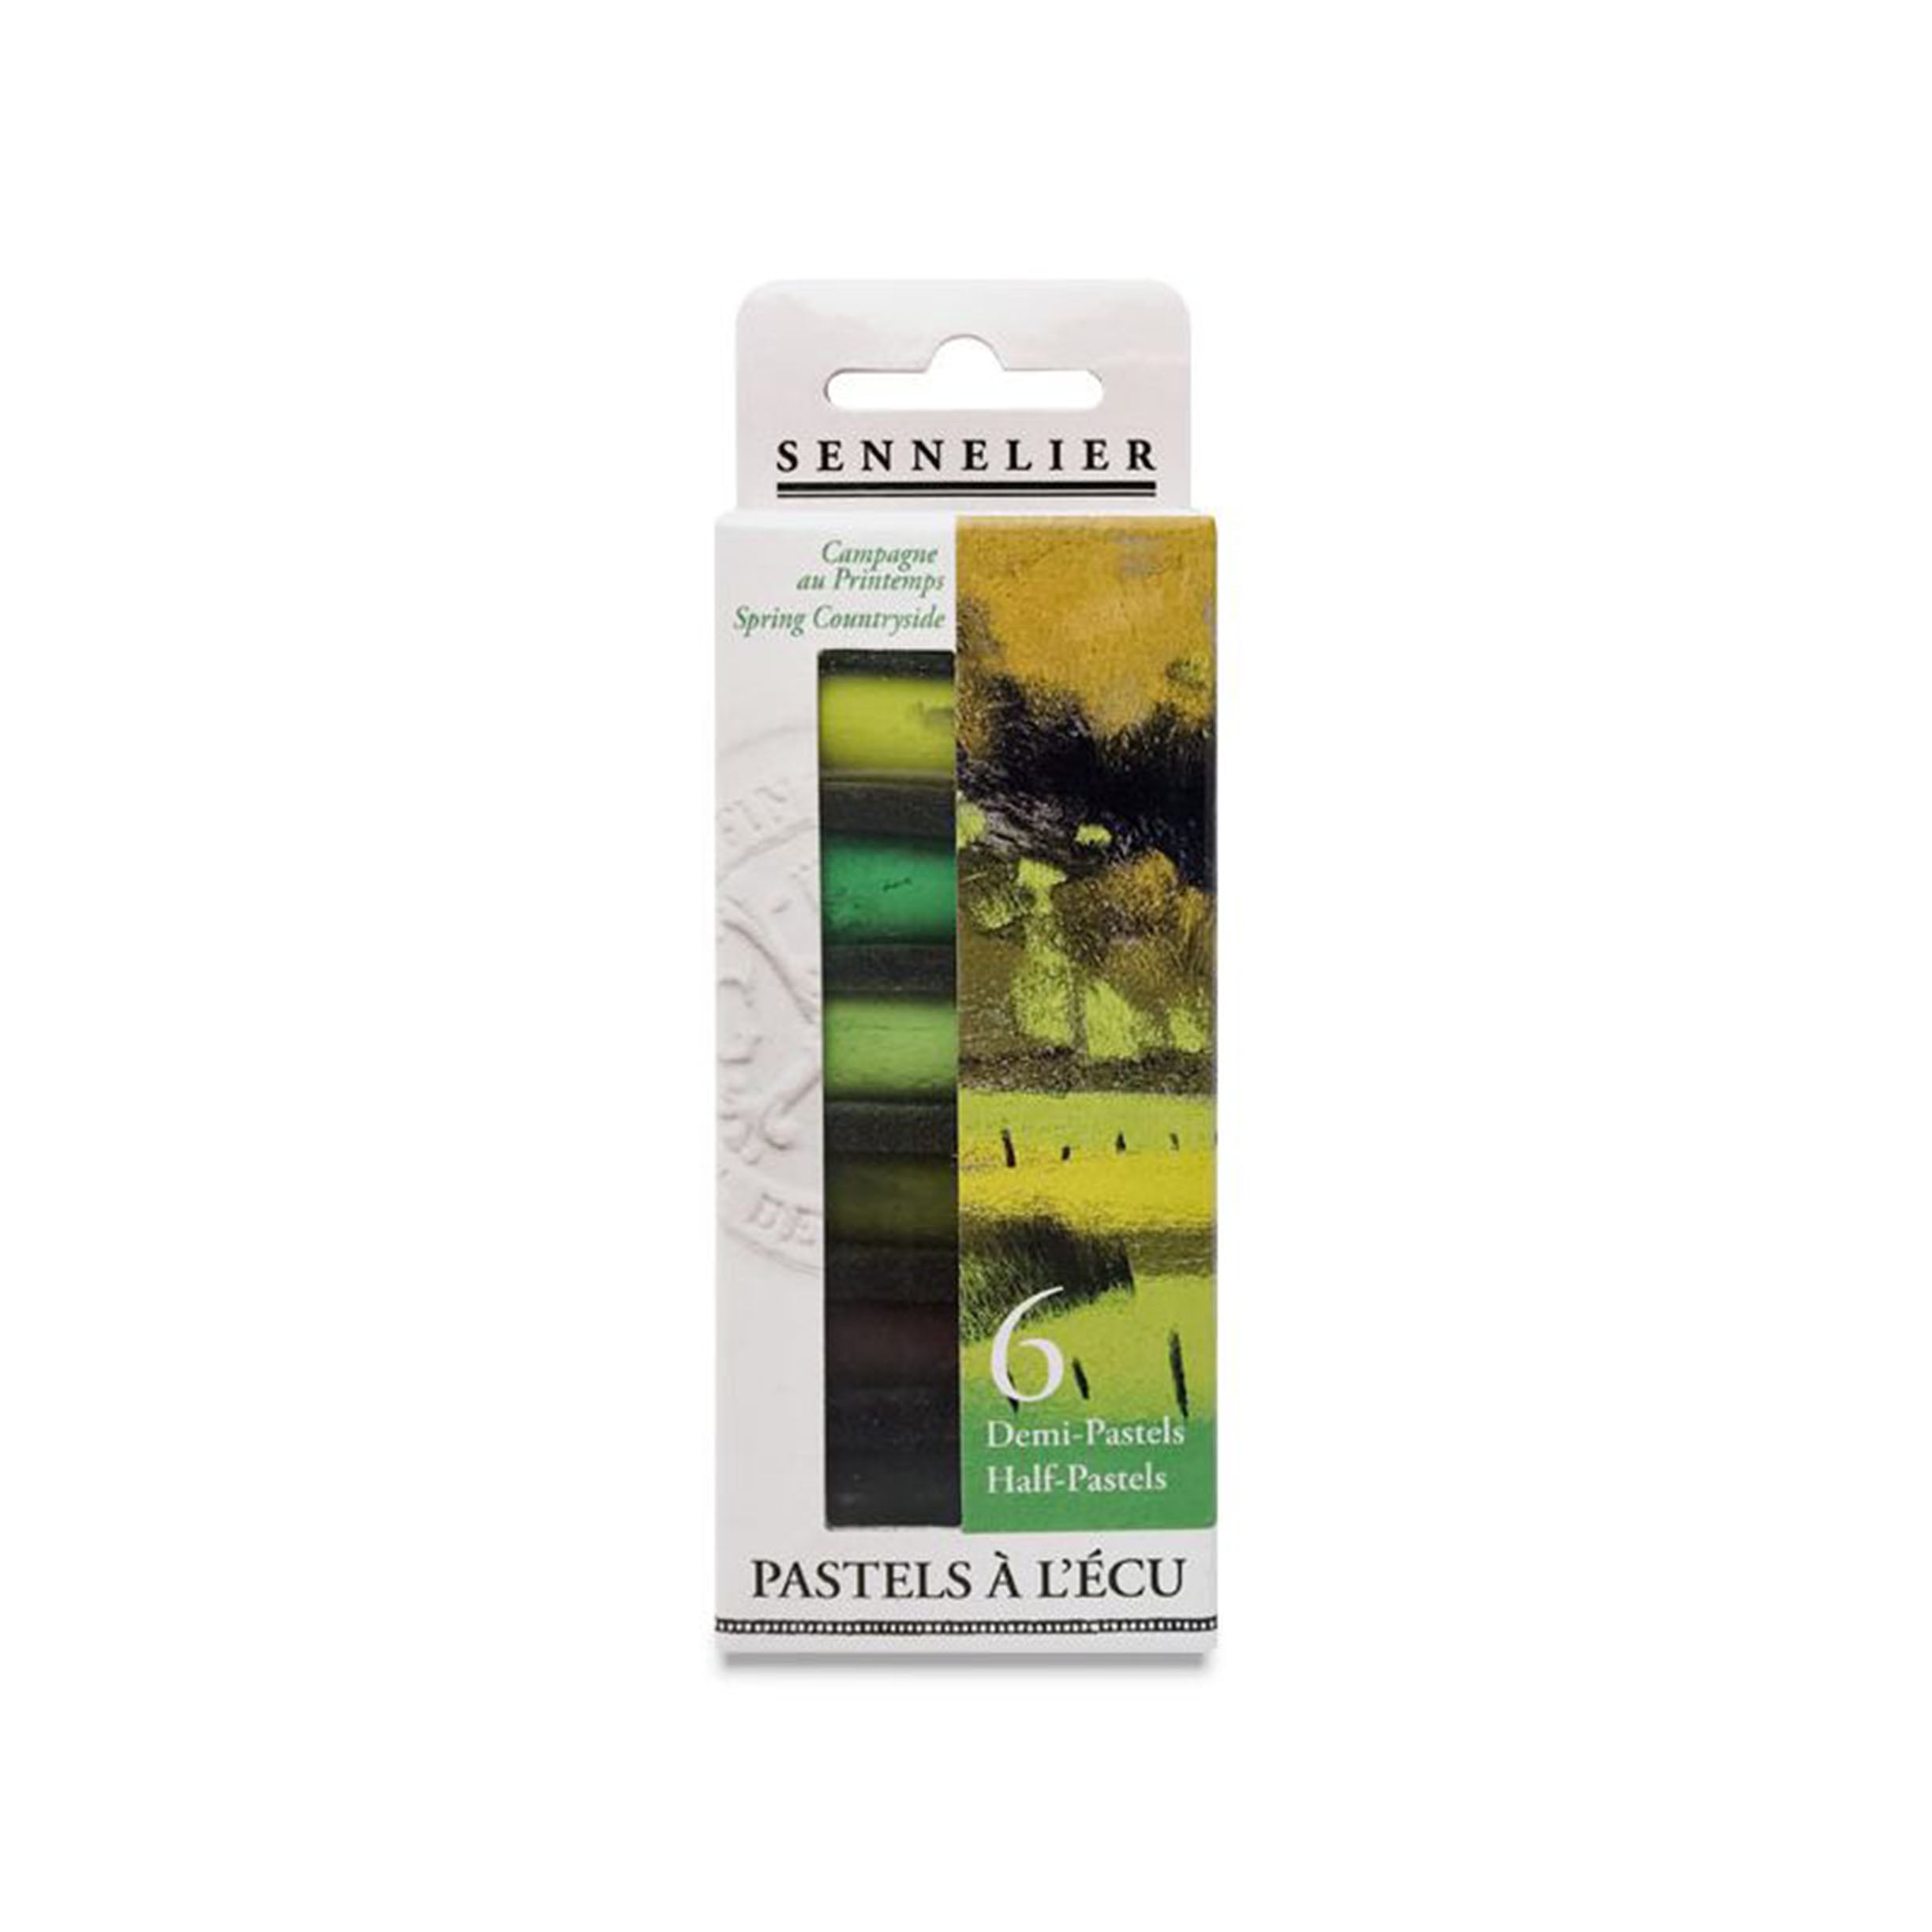 Sennelier Extra Soft Half-Pastels, Set of 6